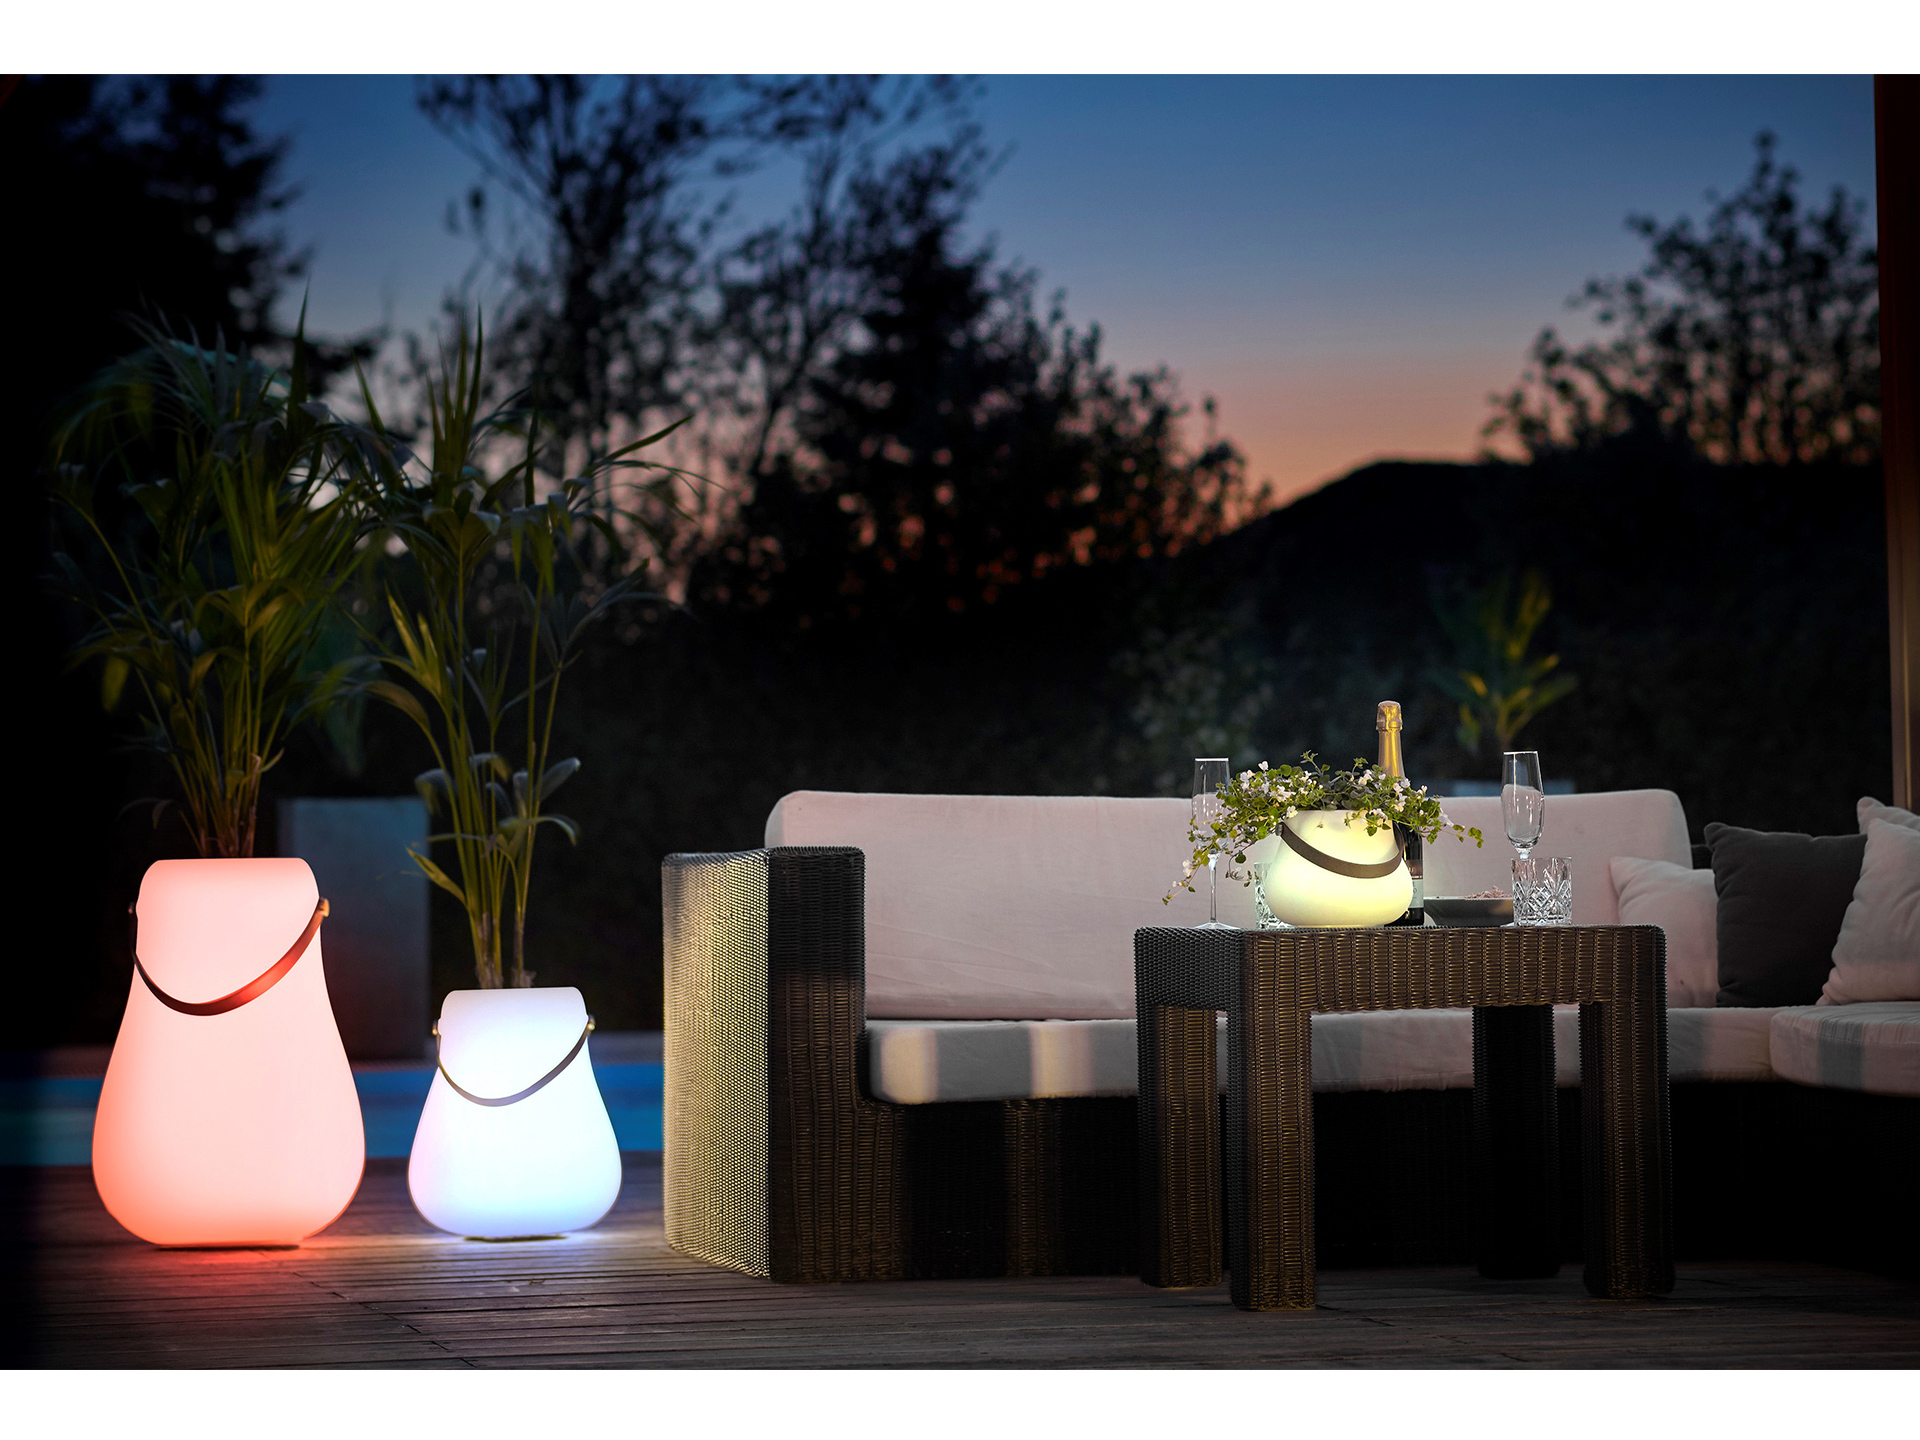 Bloempotten van Nordic D'luxx voorzien van verlichting en speakers